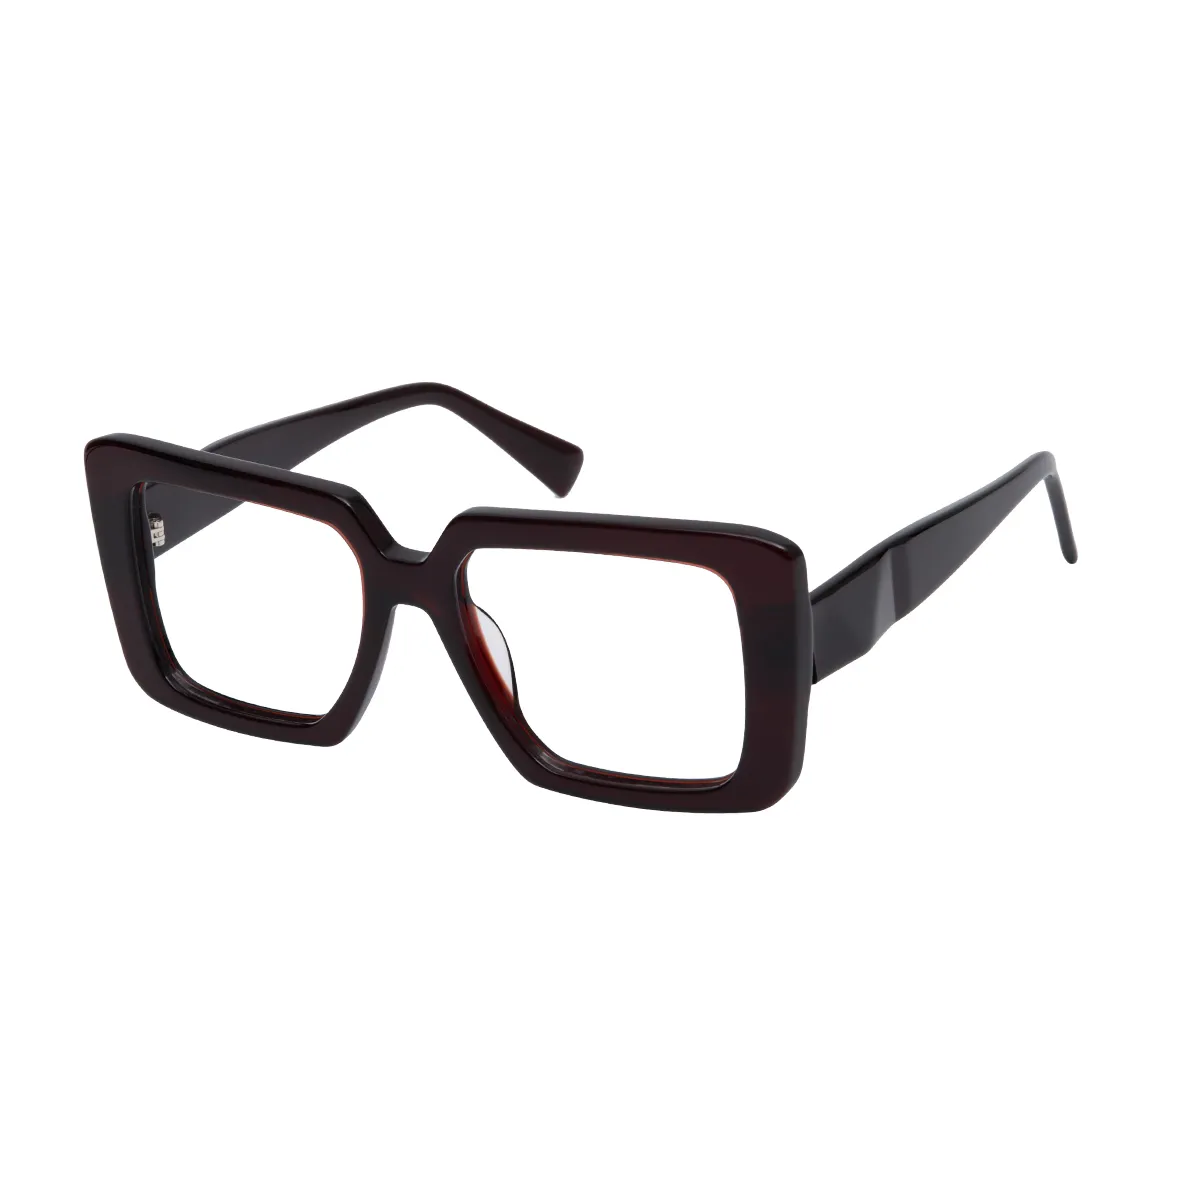 Figueroa - Square Brown Glasses for Women